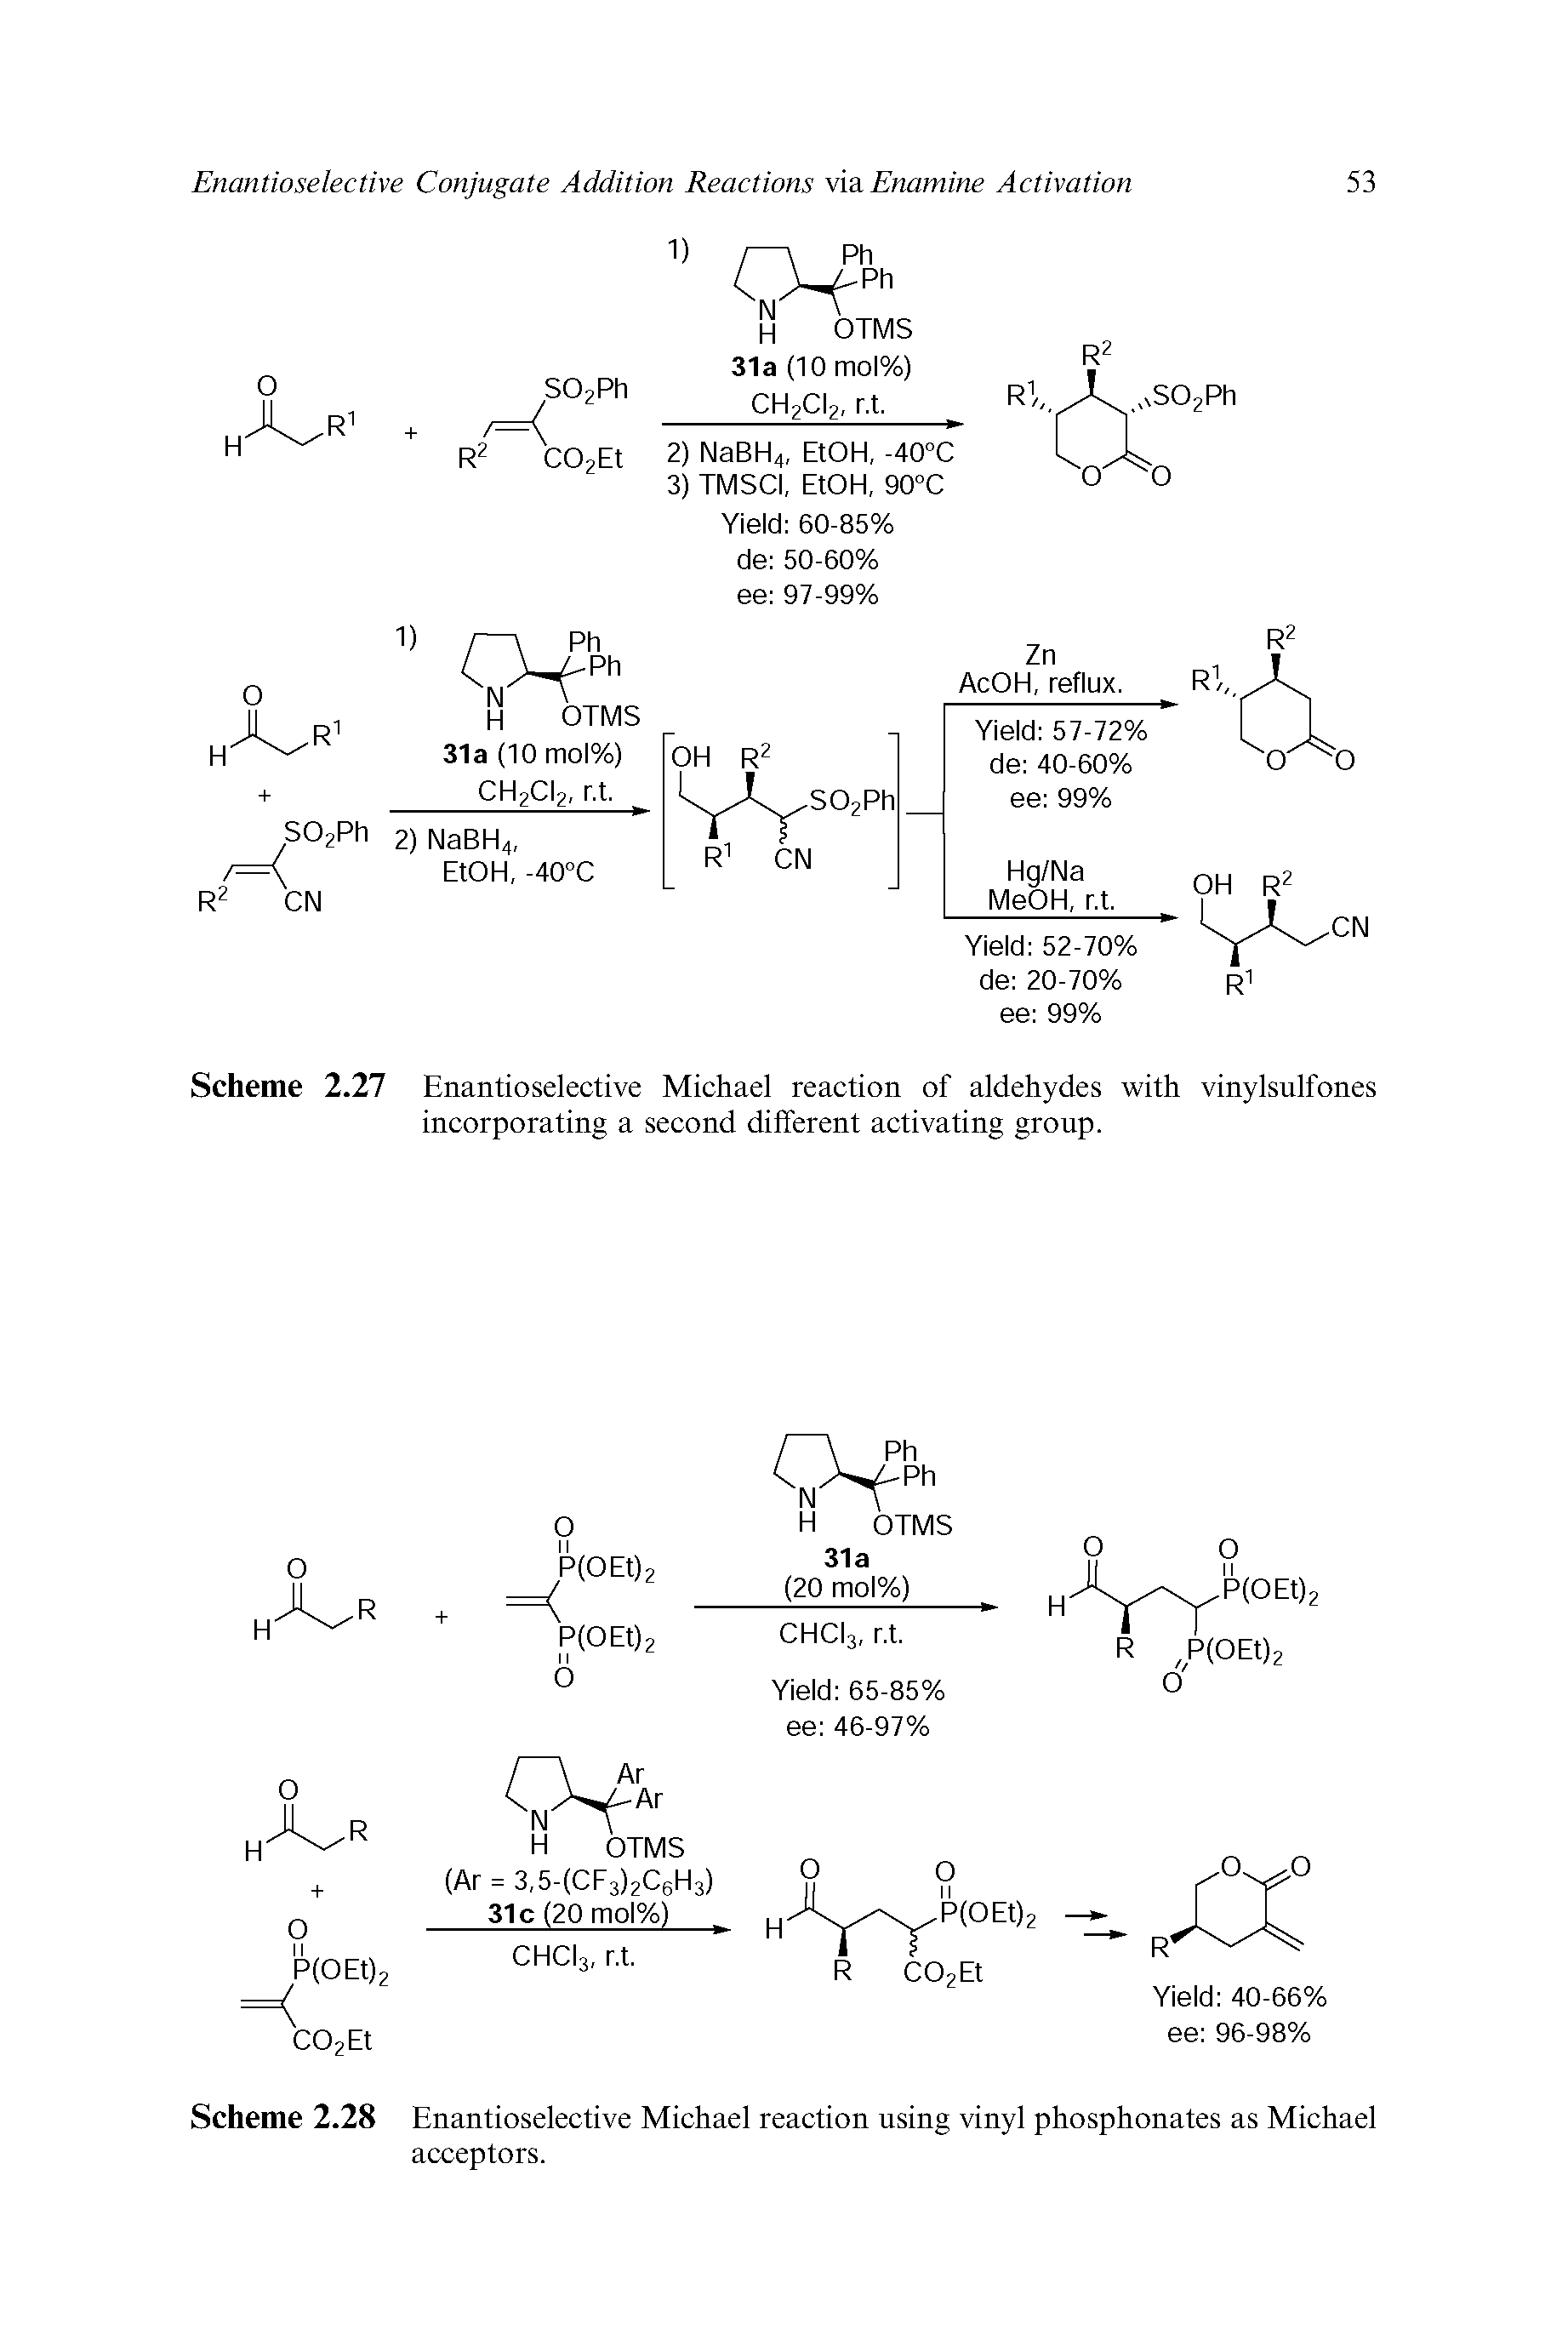 Scheme 2.28 Enantioselective Michael reaction using vinyl phosphonates as Michael acceptors.